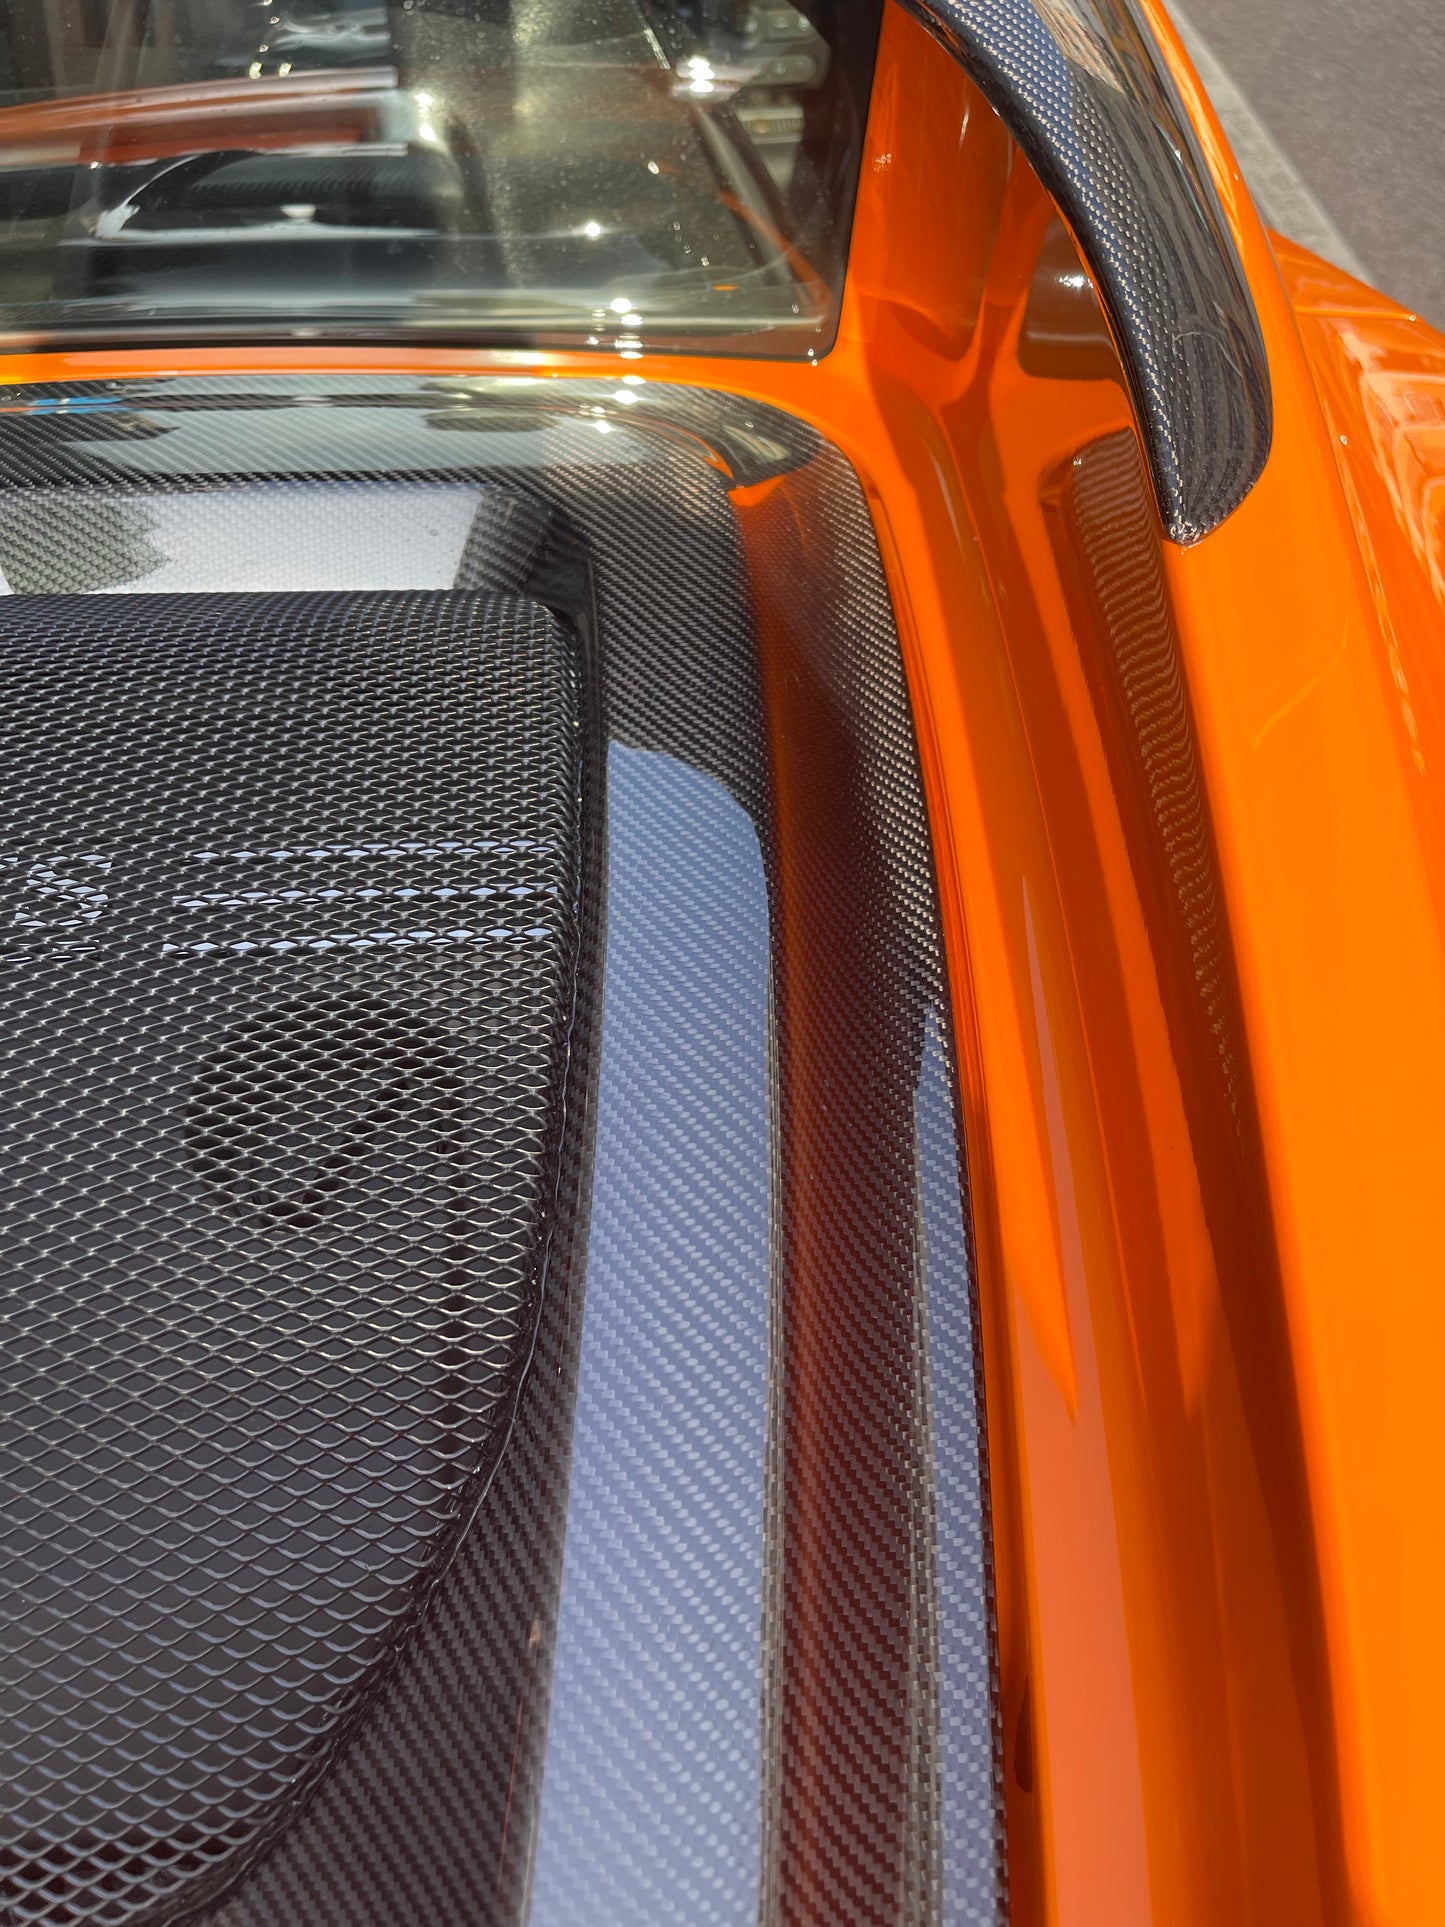 Lotus Elise V Weave Carbon Fiber Engine Cover